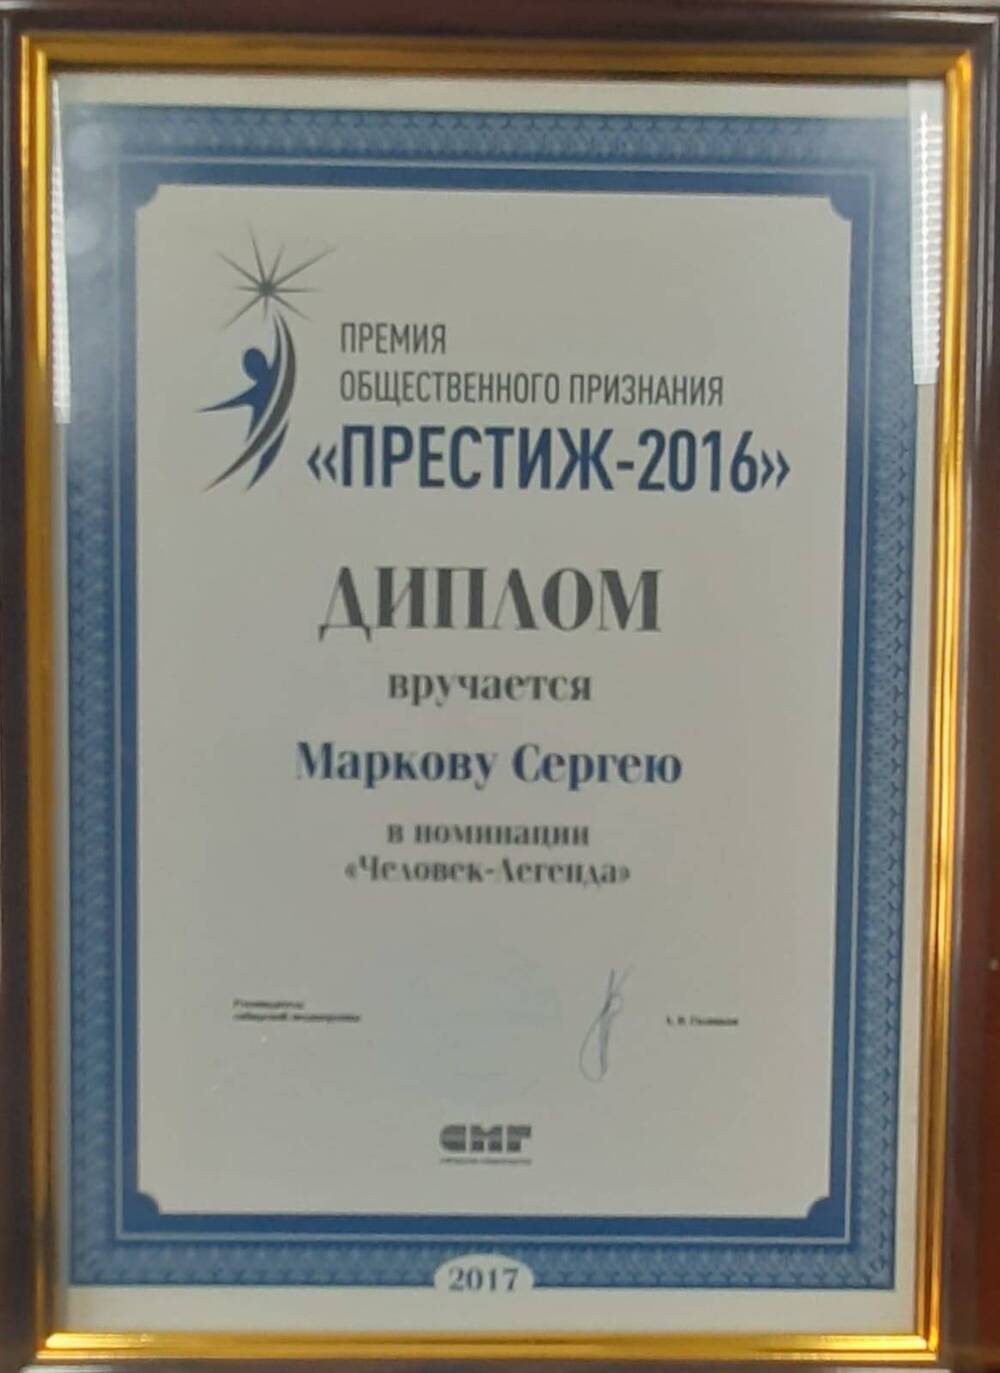 Диплом С.С. Маркову за участие в Премии общественного признания «Престиж – 2016».